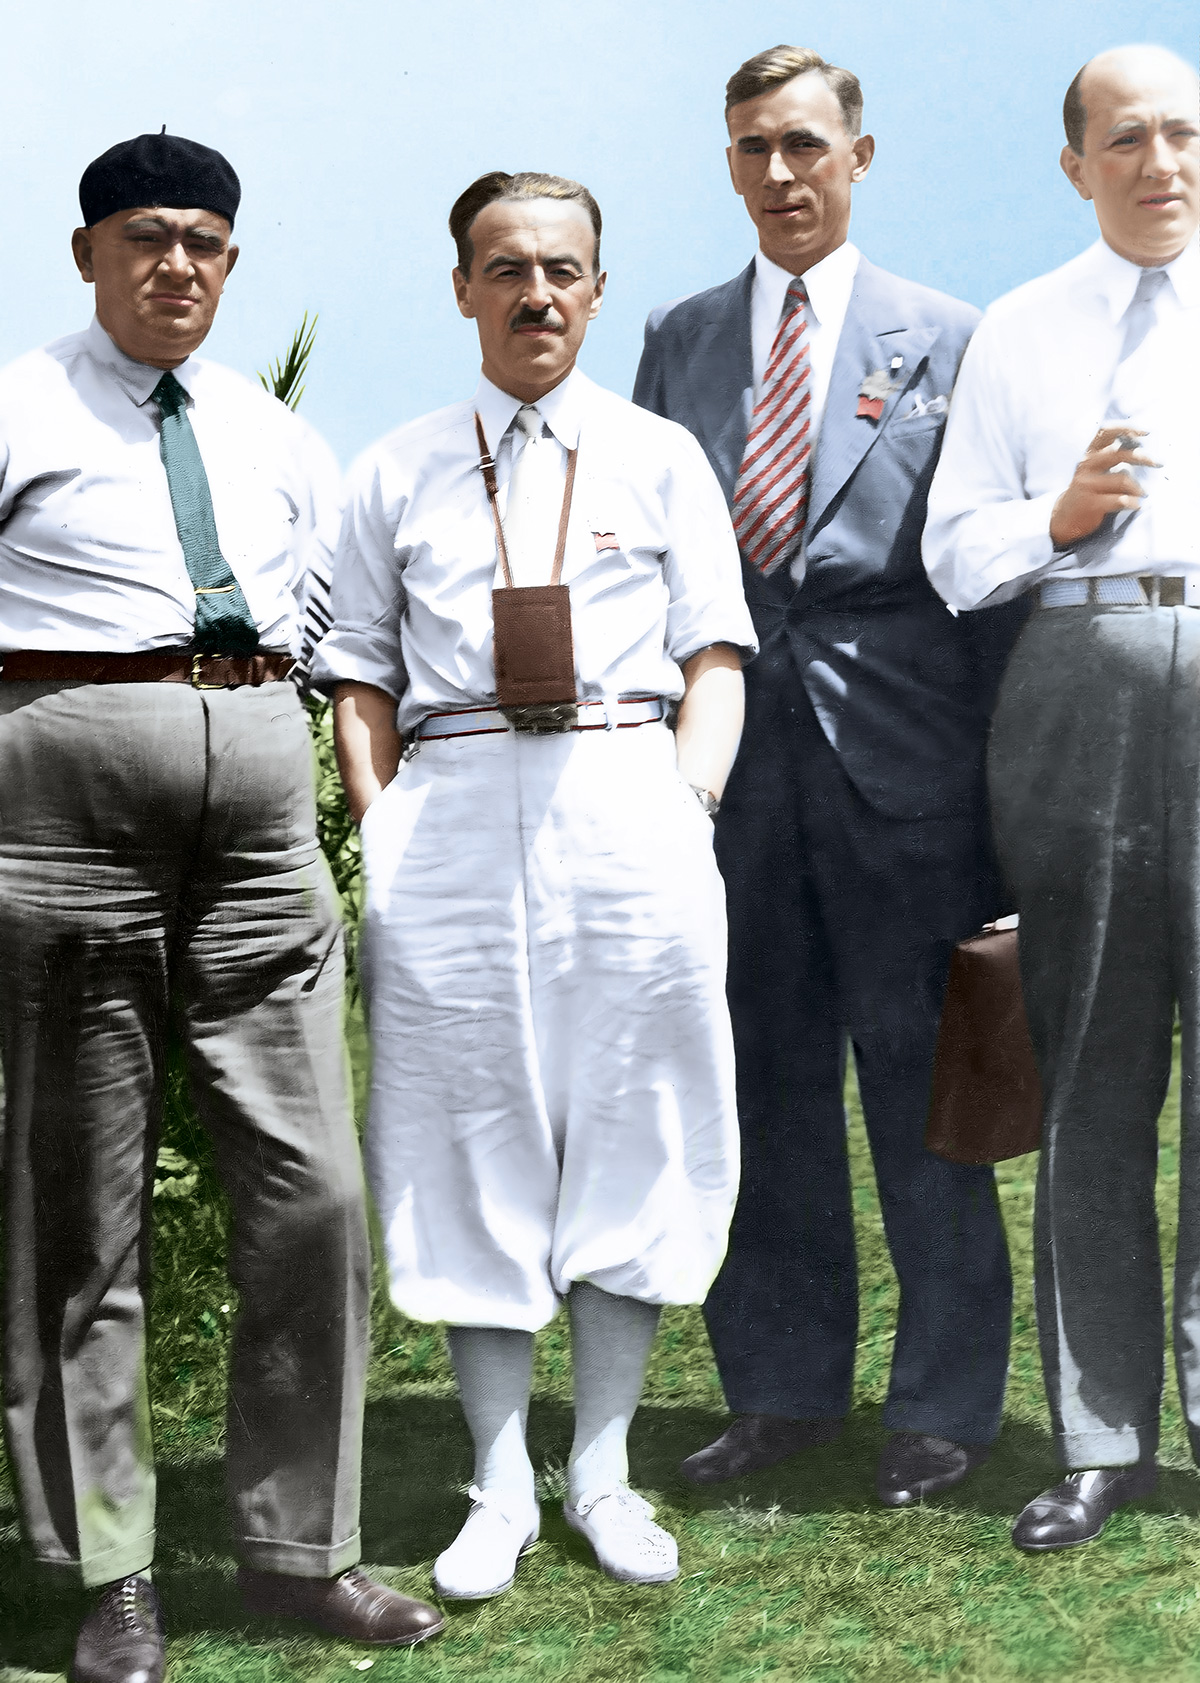 Józef Baran (w środku) został mianowany kierownikiem drużyny lekkoatletycznej na igrzyskach w Los Angeles w 1932 r. Na zdjęciu wśród innych członków polskiej ekspedycji. Źródło: Narodowe Archiwum Cyfrowe